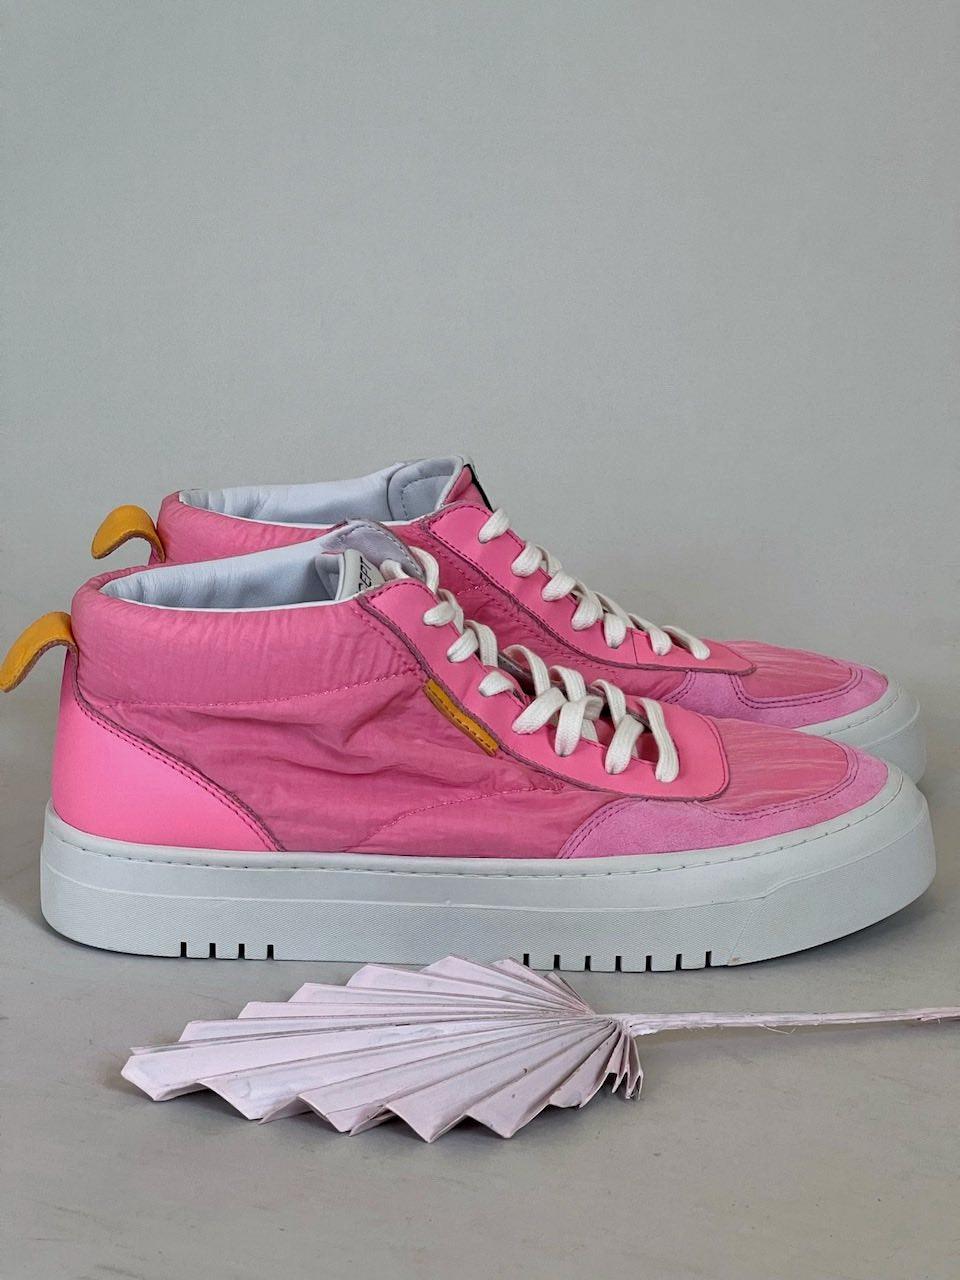 Oncept - Los Angeles Sneaker - Pink Prism - Flutter